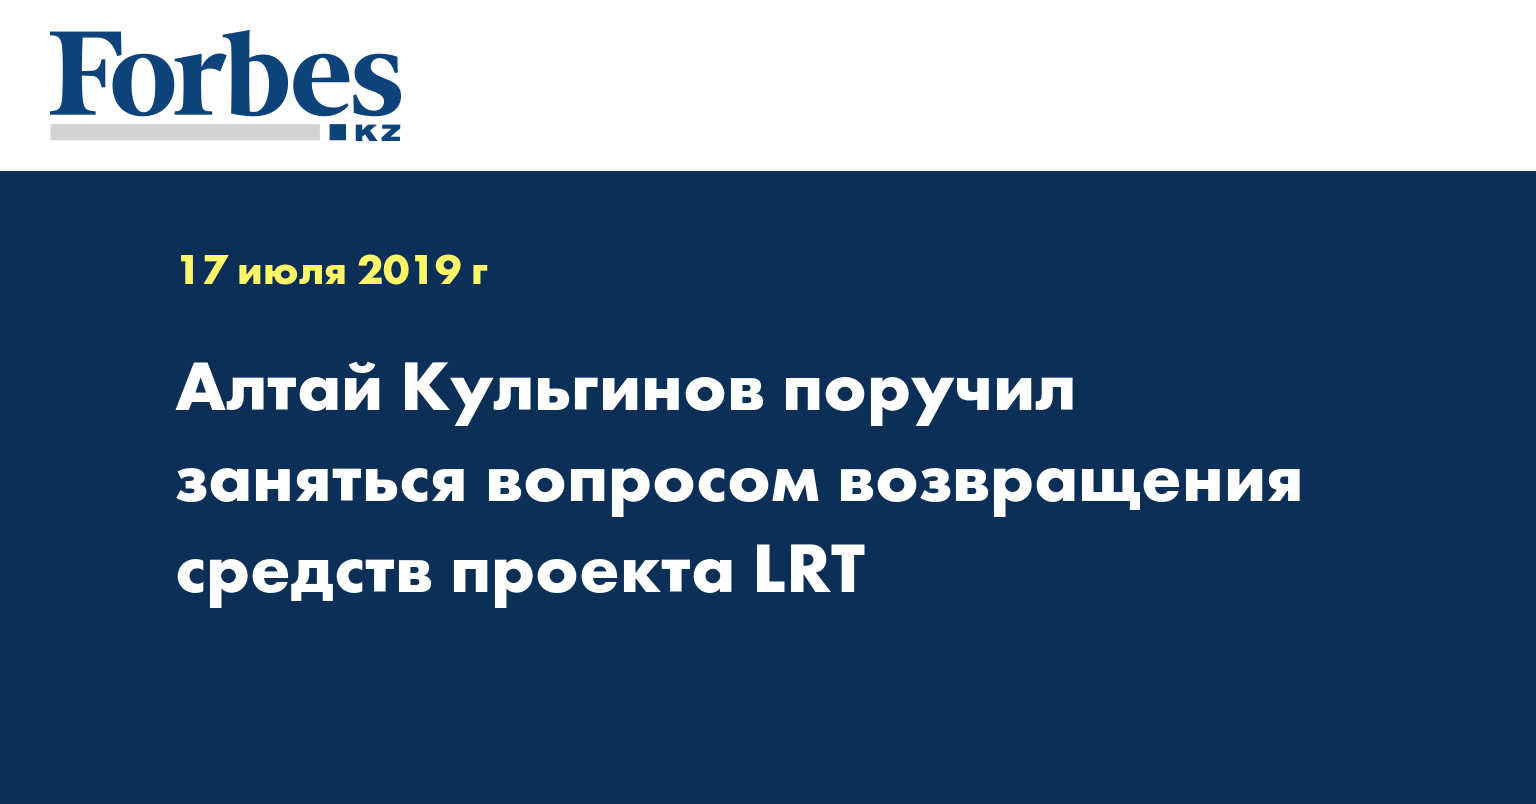 Алтай Кульгинов поручил заняться вопросом возвращения средств проекта LRT